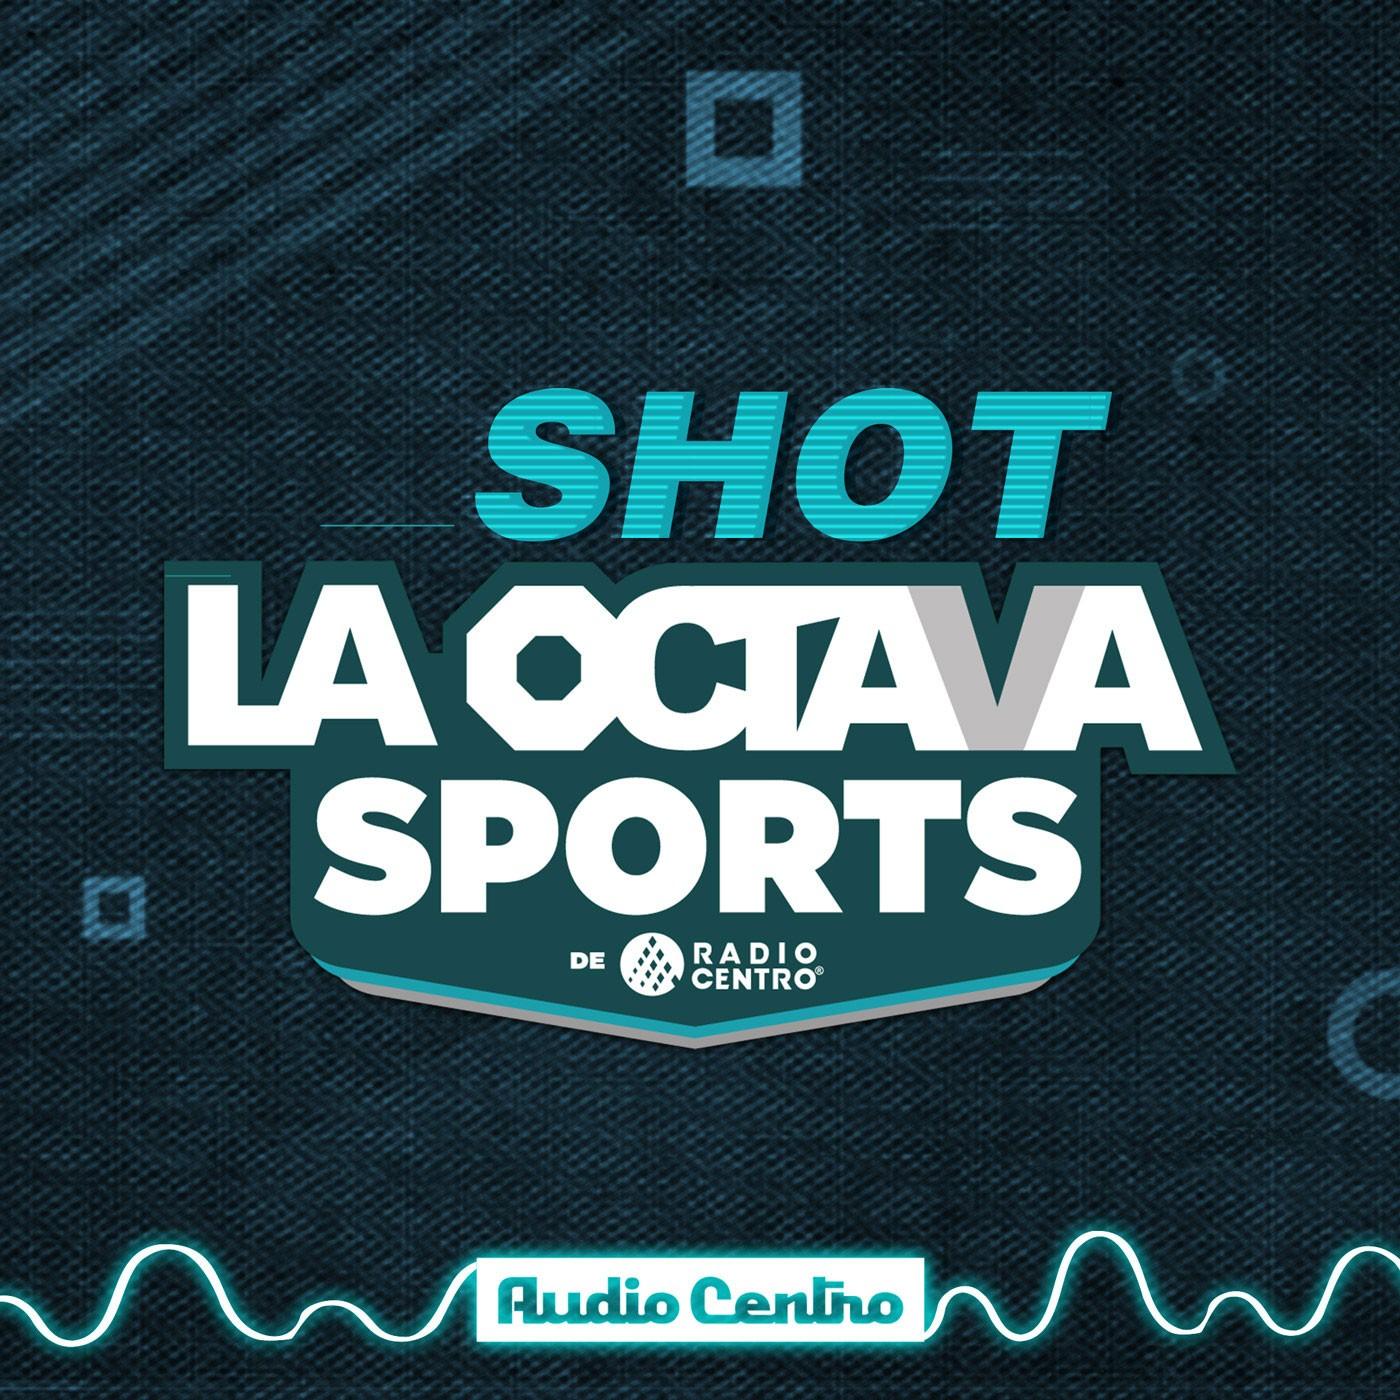 El Shot de la Octava Sports